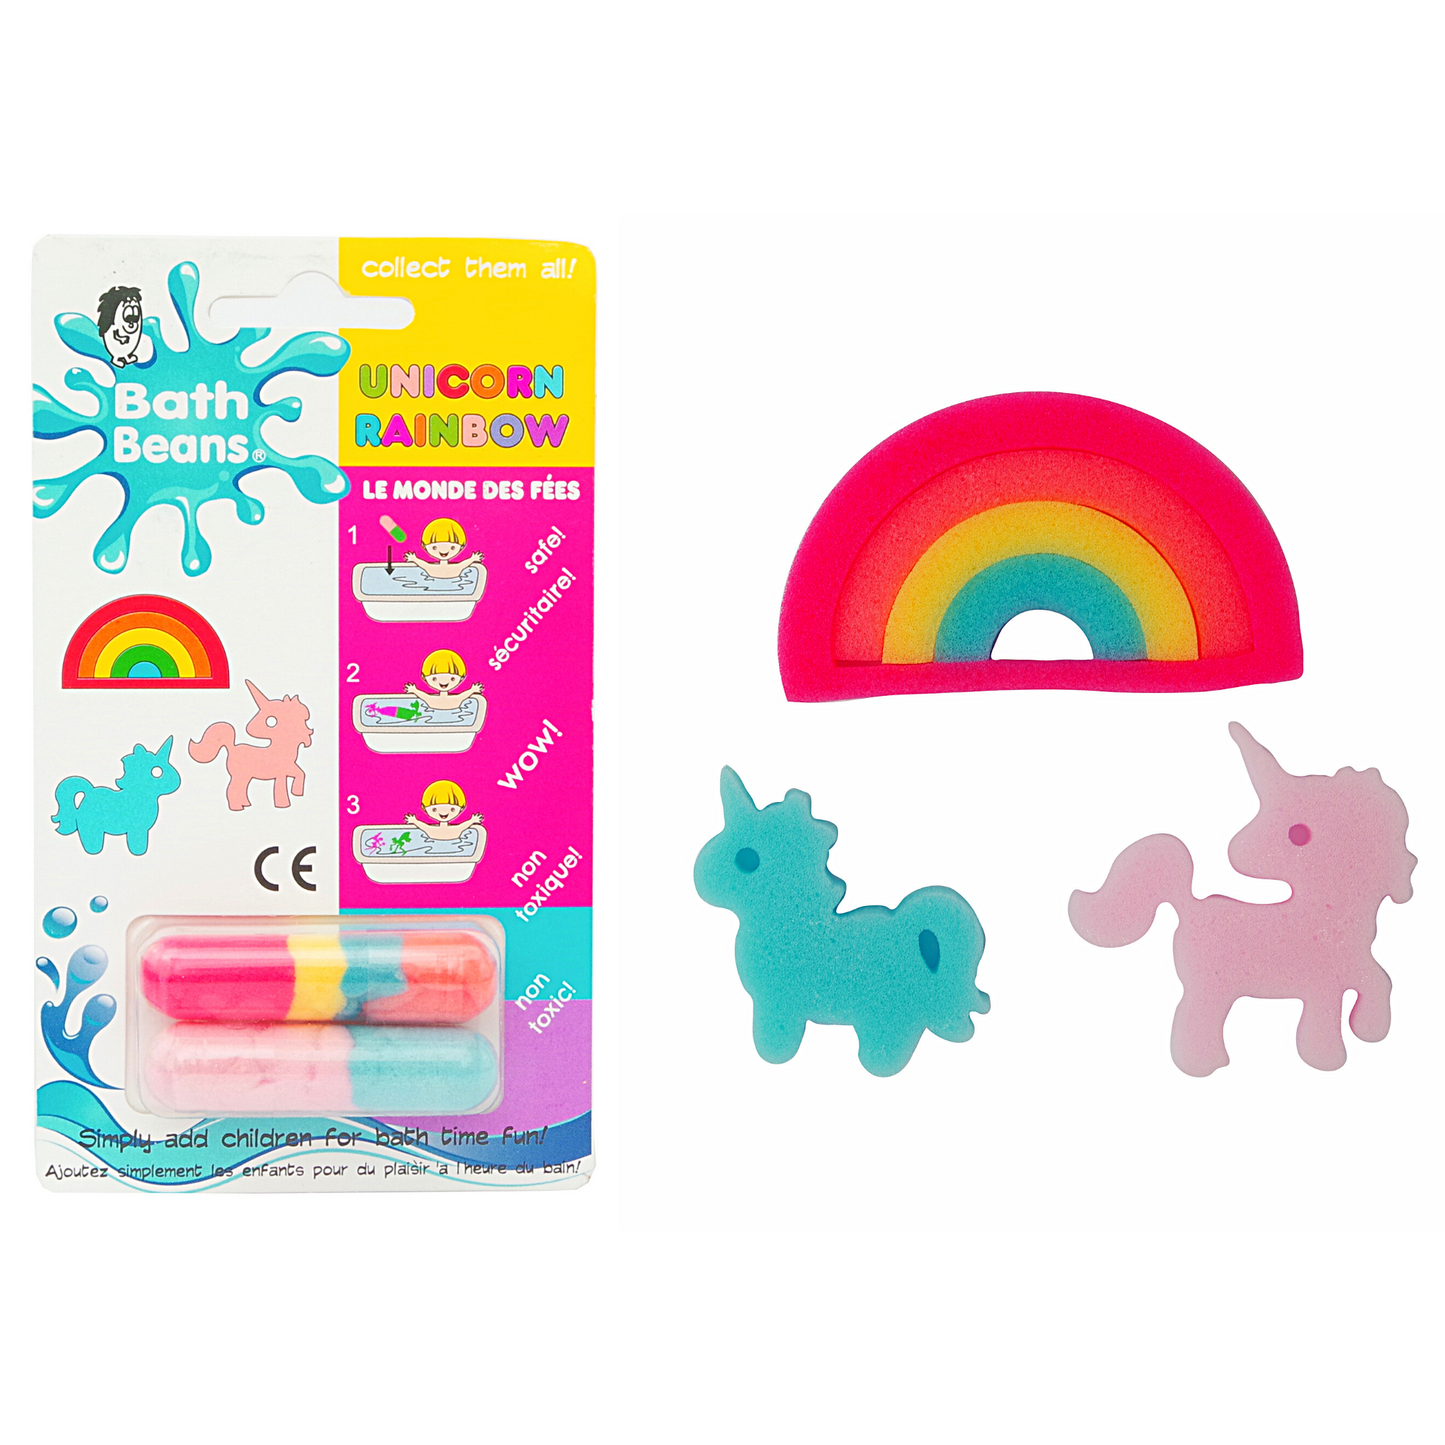 Bath Beans - Unicorn Rainbow